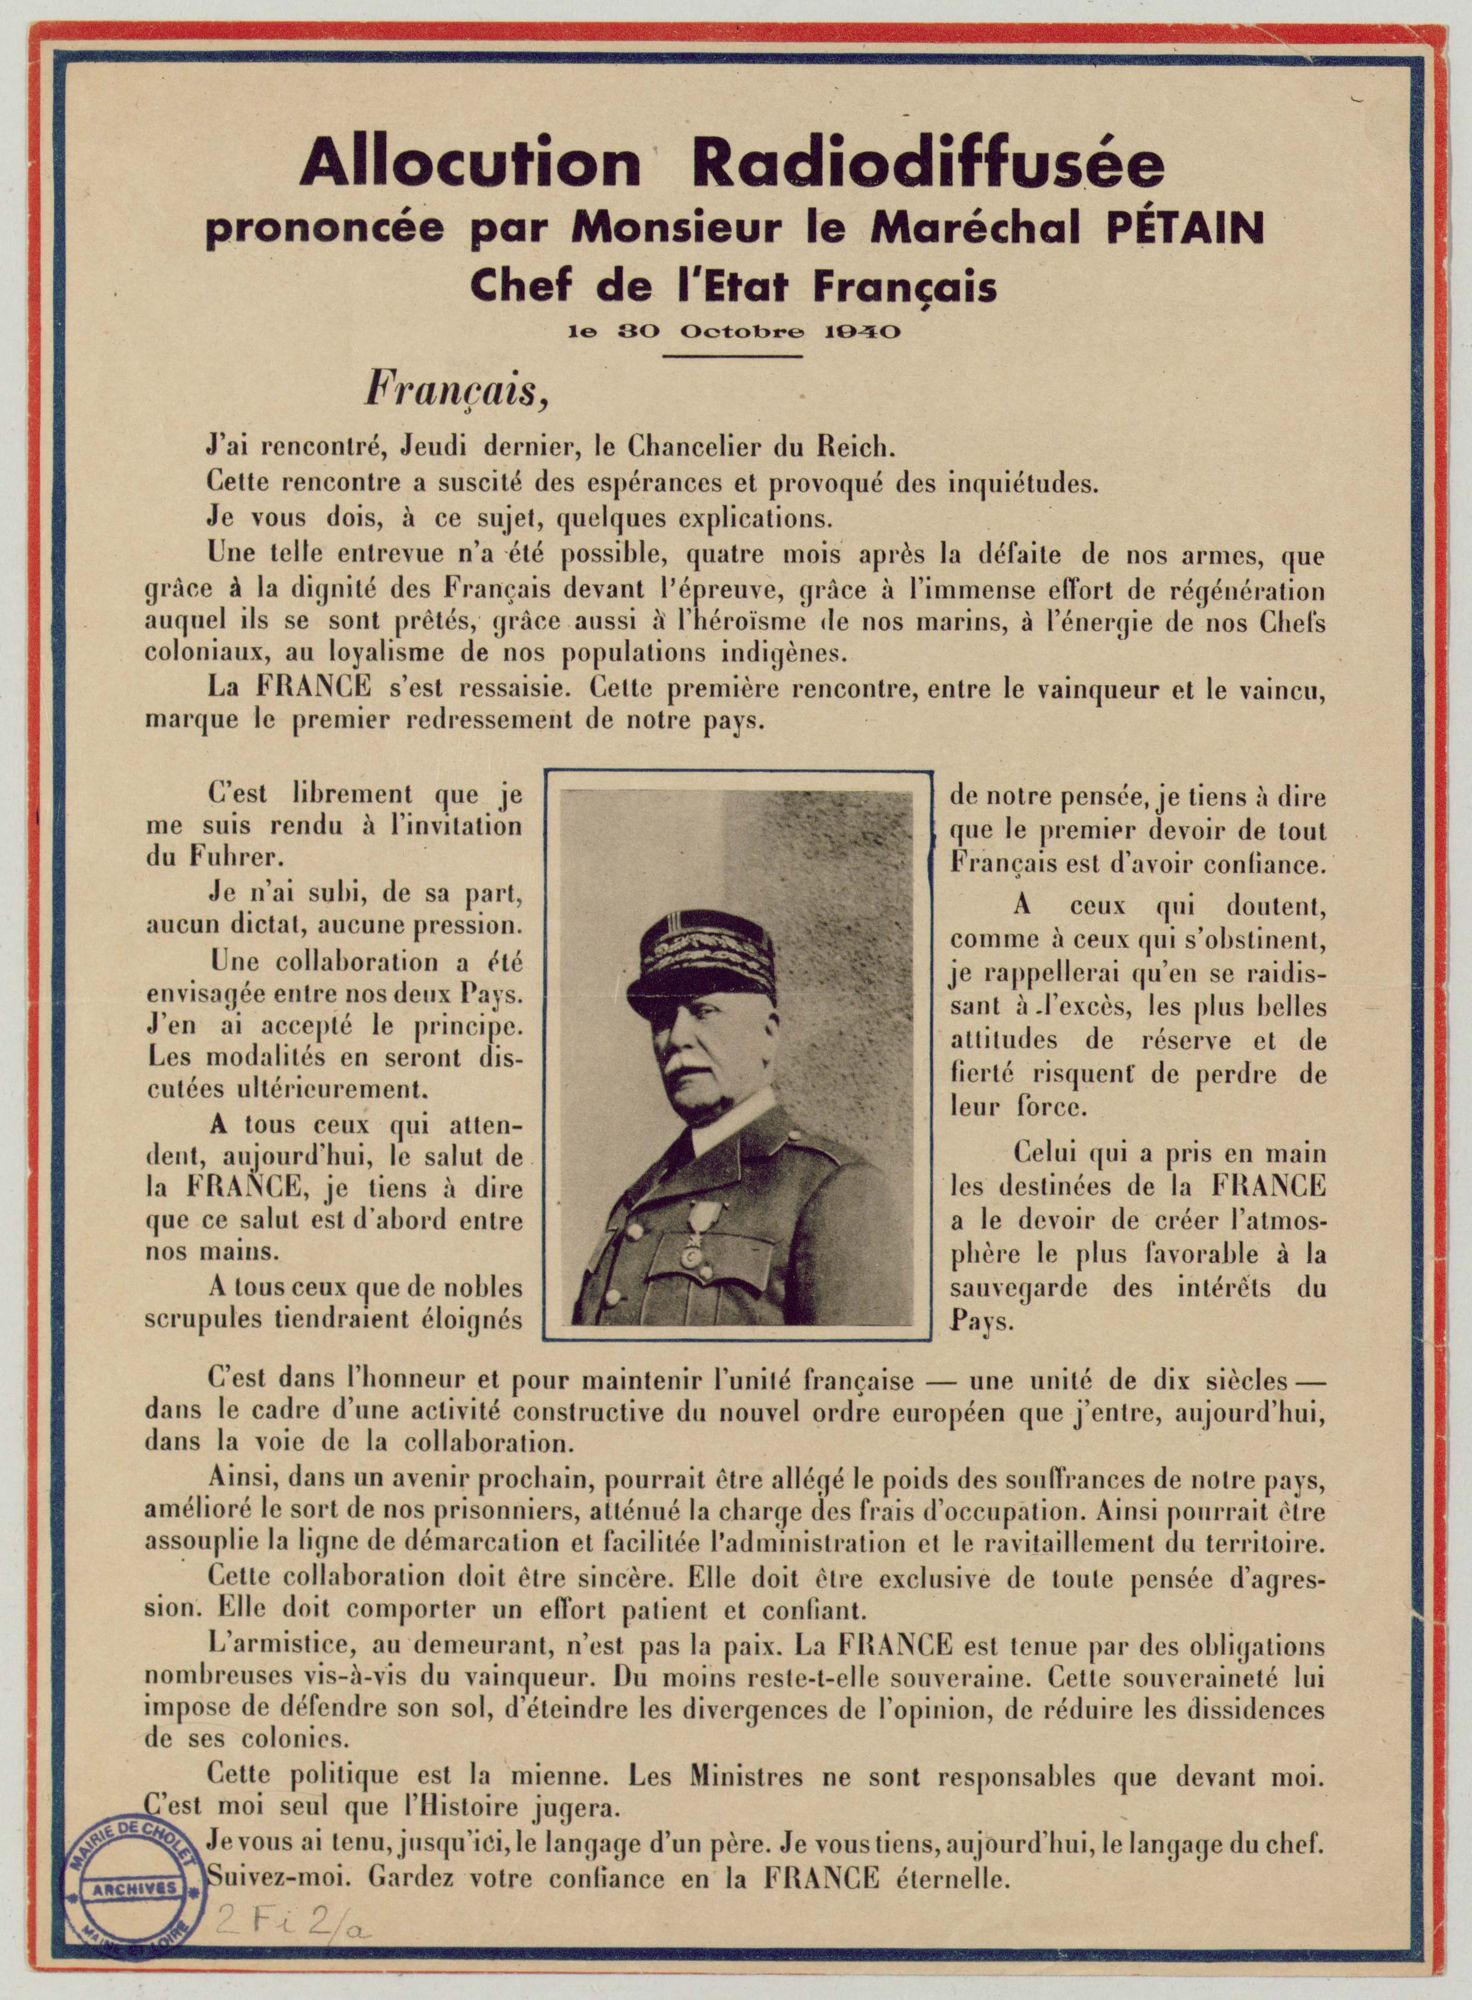 2Fi2 - Allocution radiodiffusée prononcée par le Maréchal Pétain, 1940. Coll. AMC